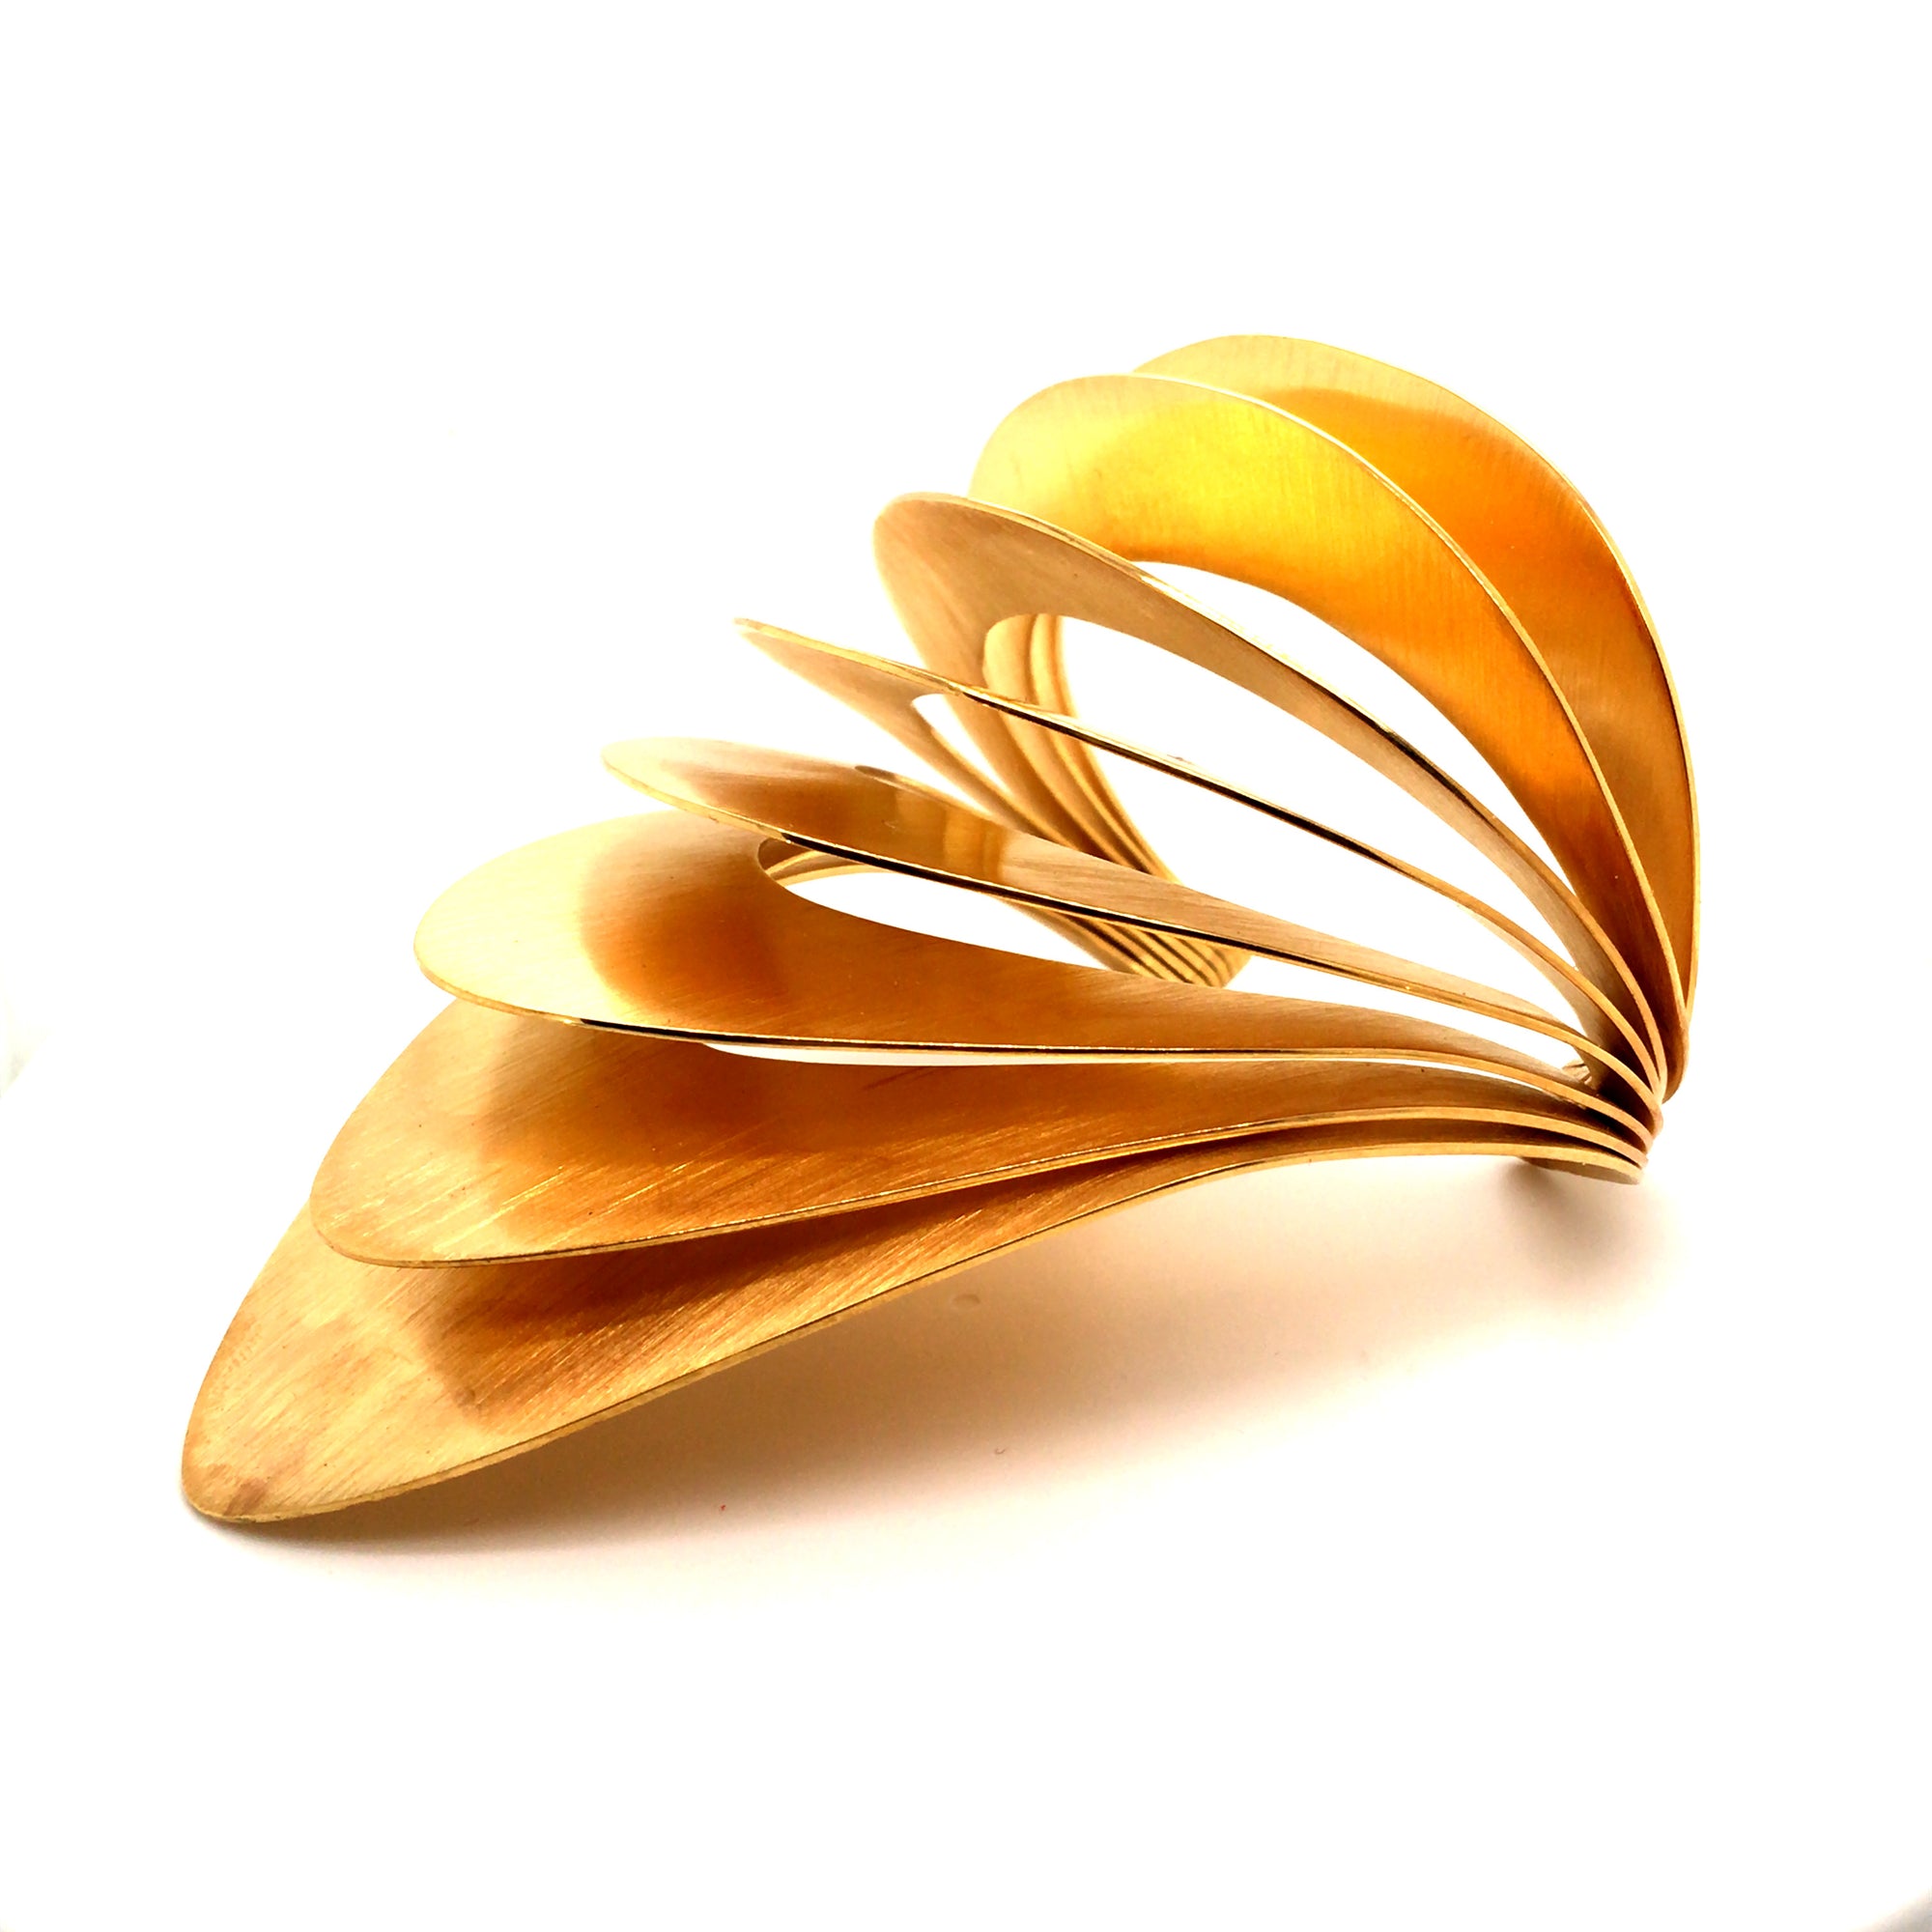 Bracelet "Distorsion" en or jaune brossé 18K créées spécialement pour l'actrice Sarah LAURENT pour la présentation du film "Un Autre Monde" de Stéphane BRIZÉ le 10 septembre 2021 à la 78ème Mostra de Venise Paris Design week